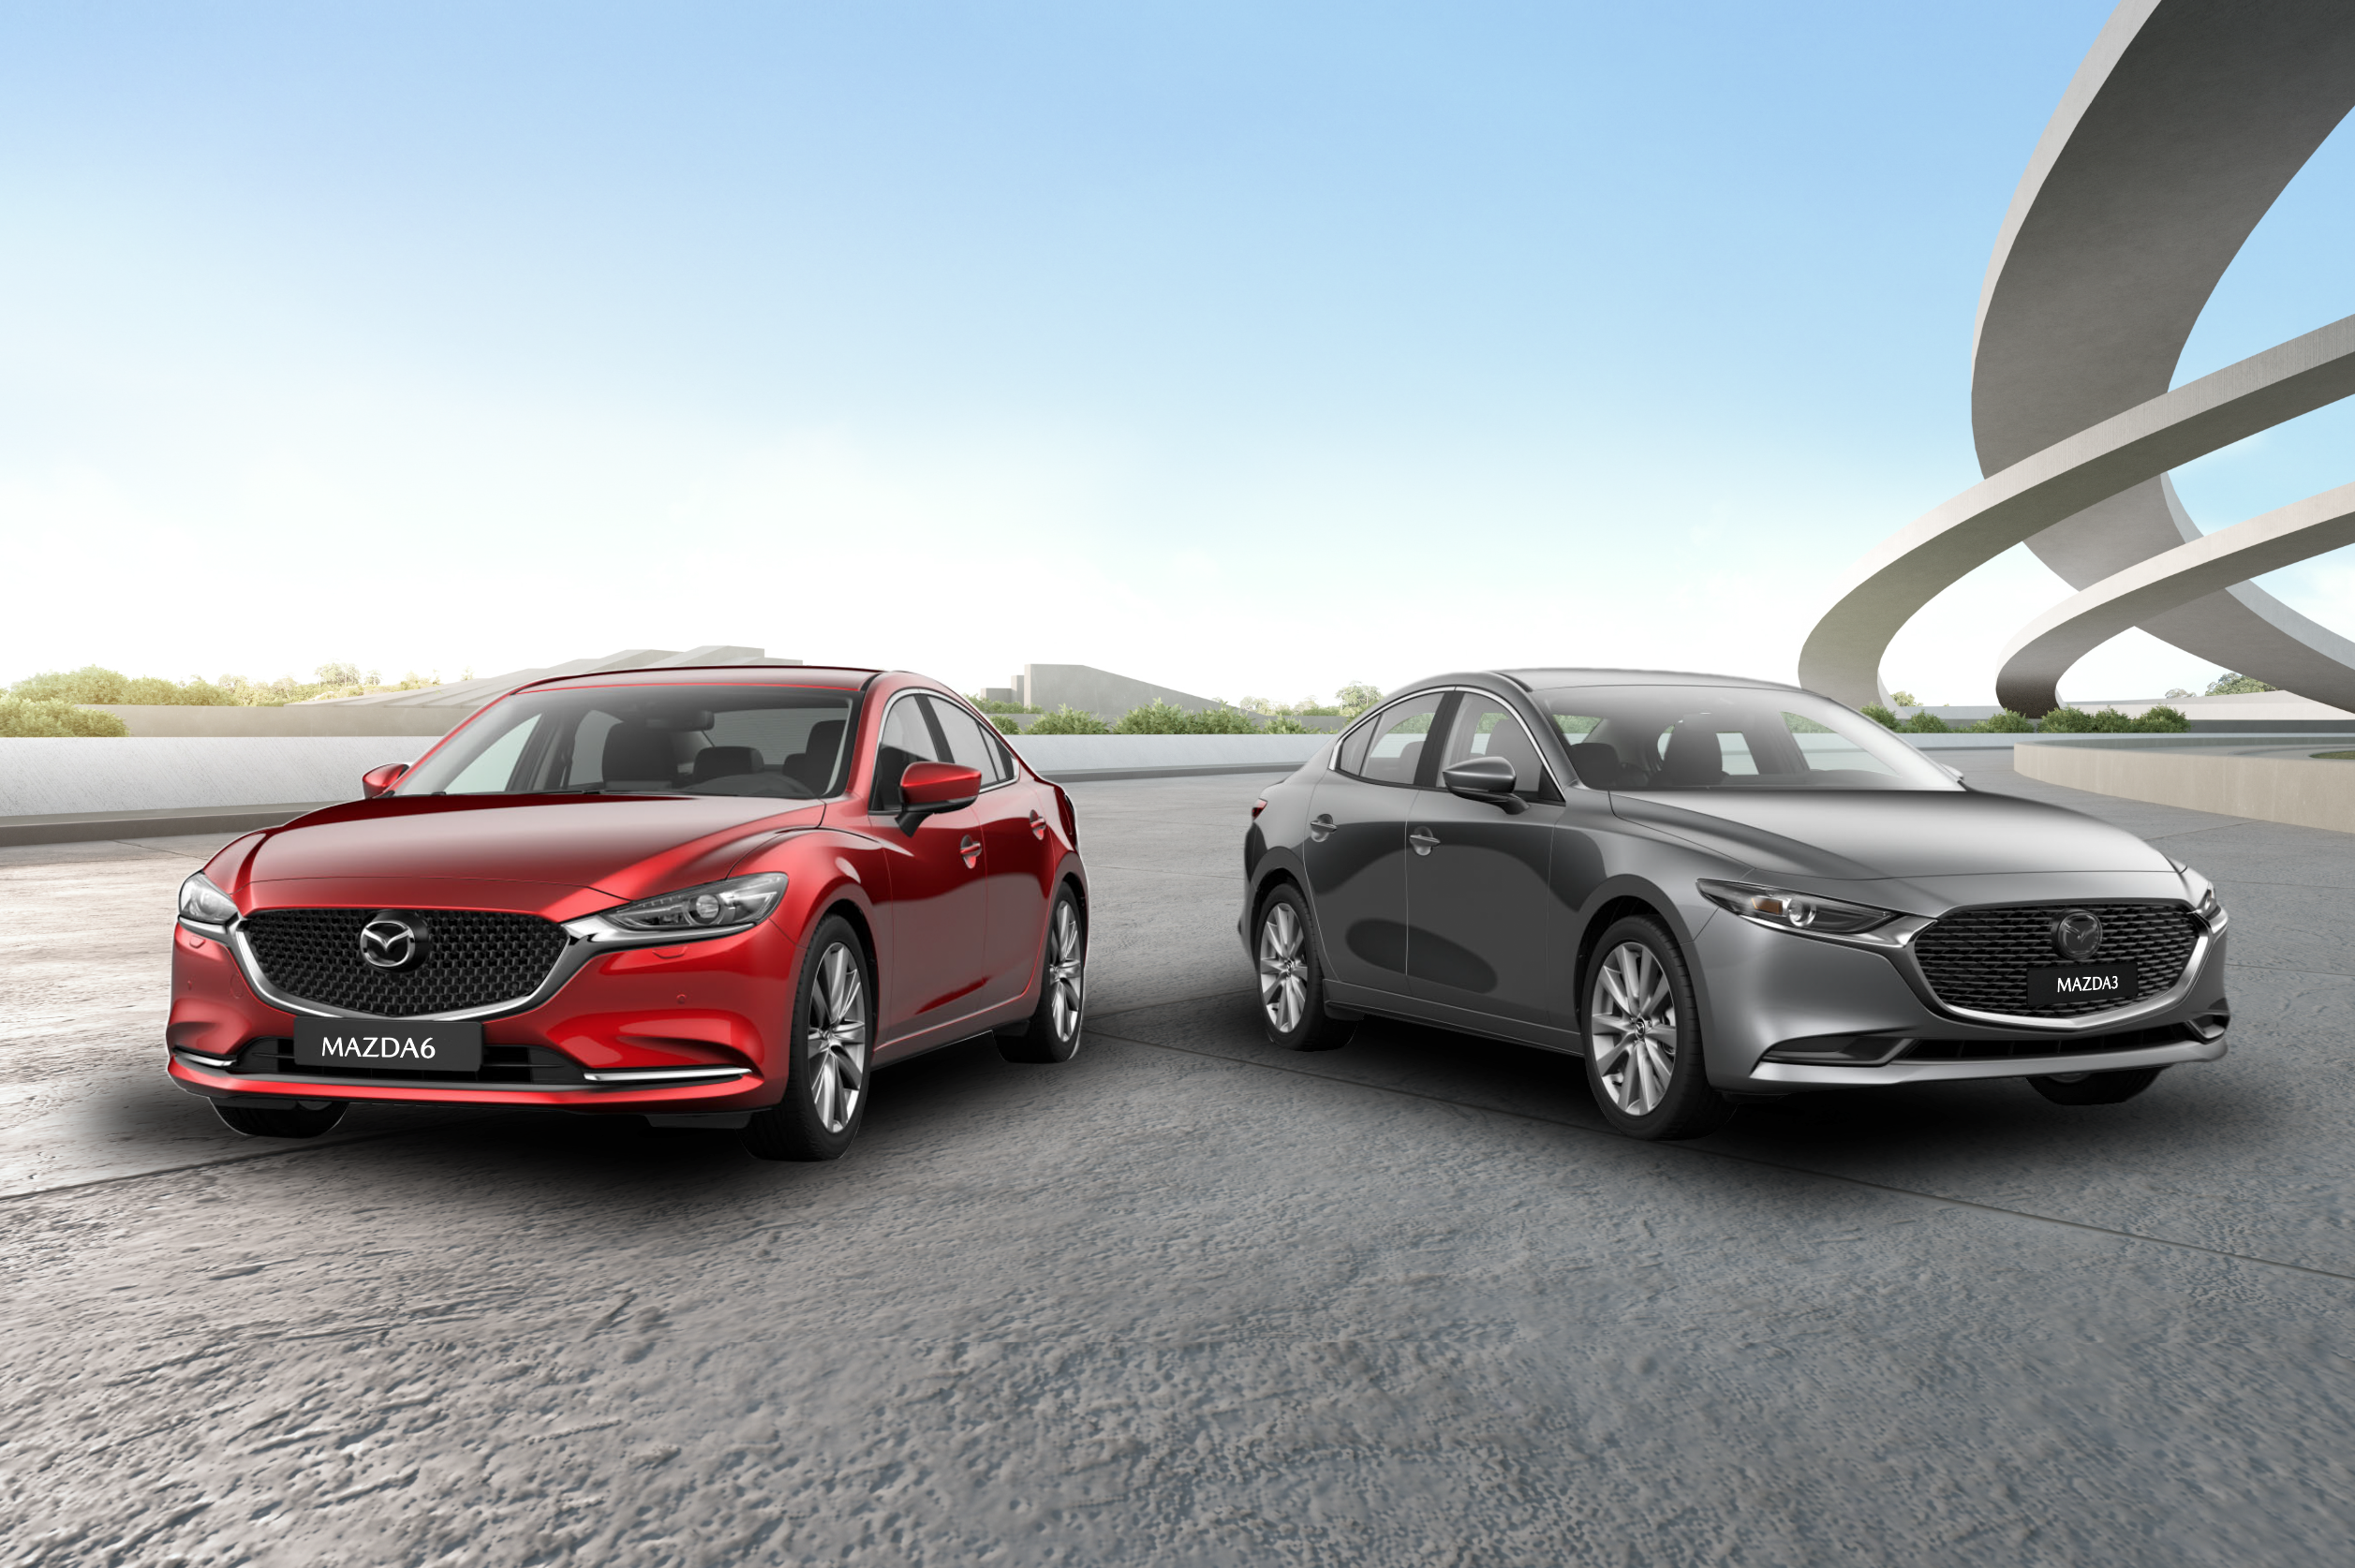 Bộ đôi giúp Mazda làm nên chuyện ở phân khúc sedan tầm giá dưới 1 tỉ đồng - Ảnh 1.